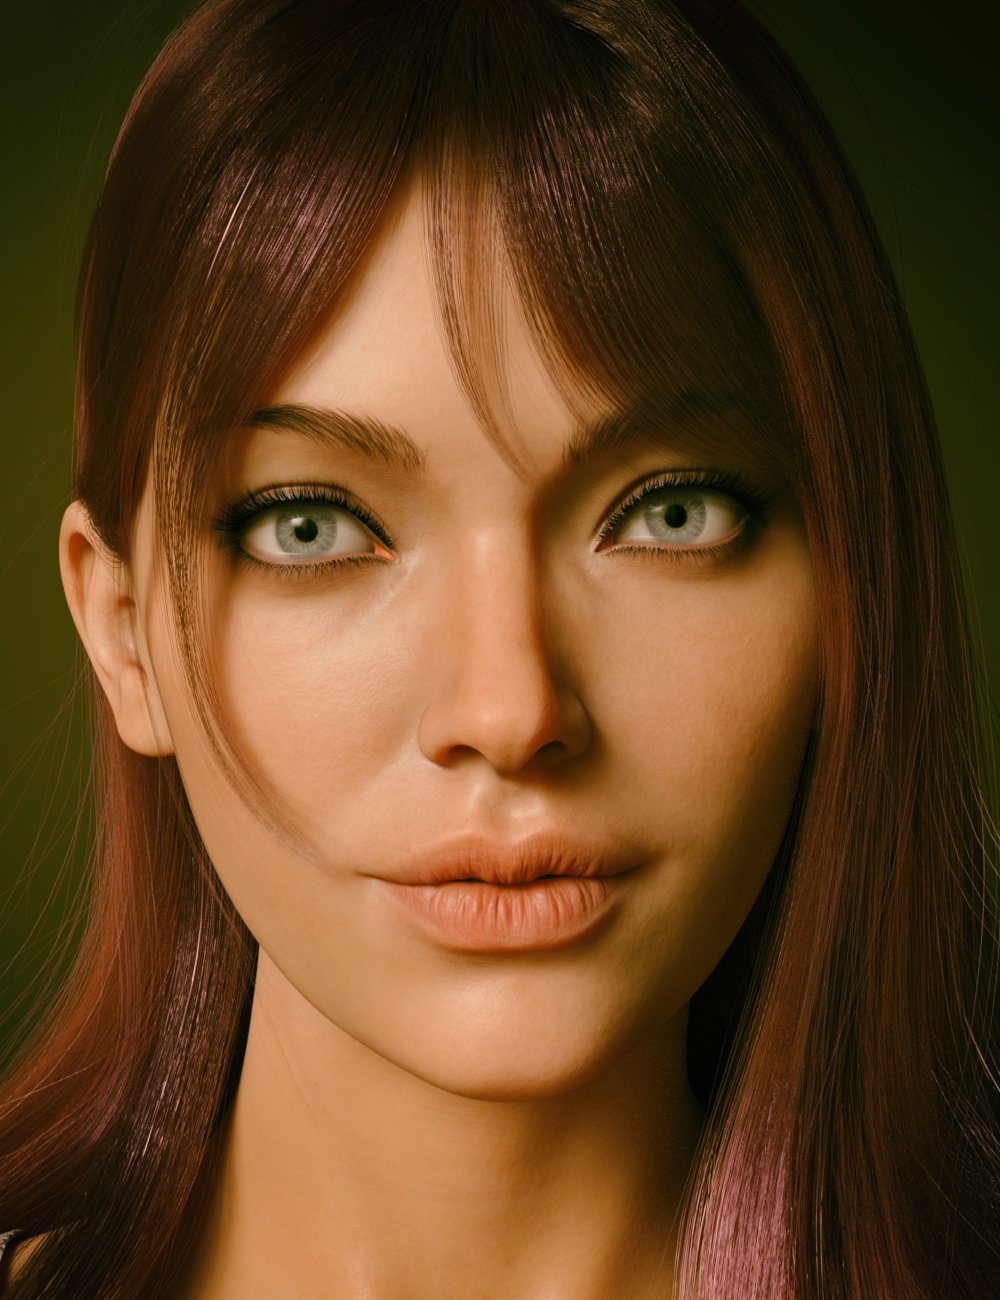 Makasha HD for Genesis 8.1 Female by: Goanna, 3D Models by Daz 3D